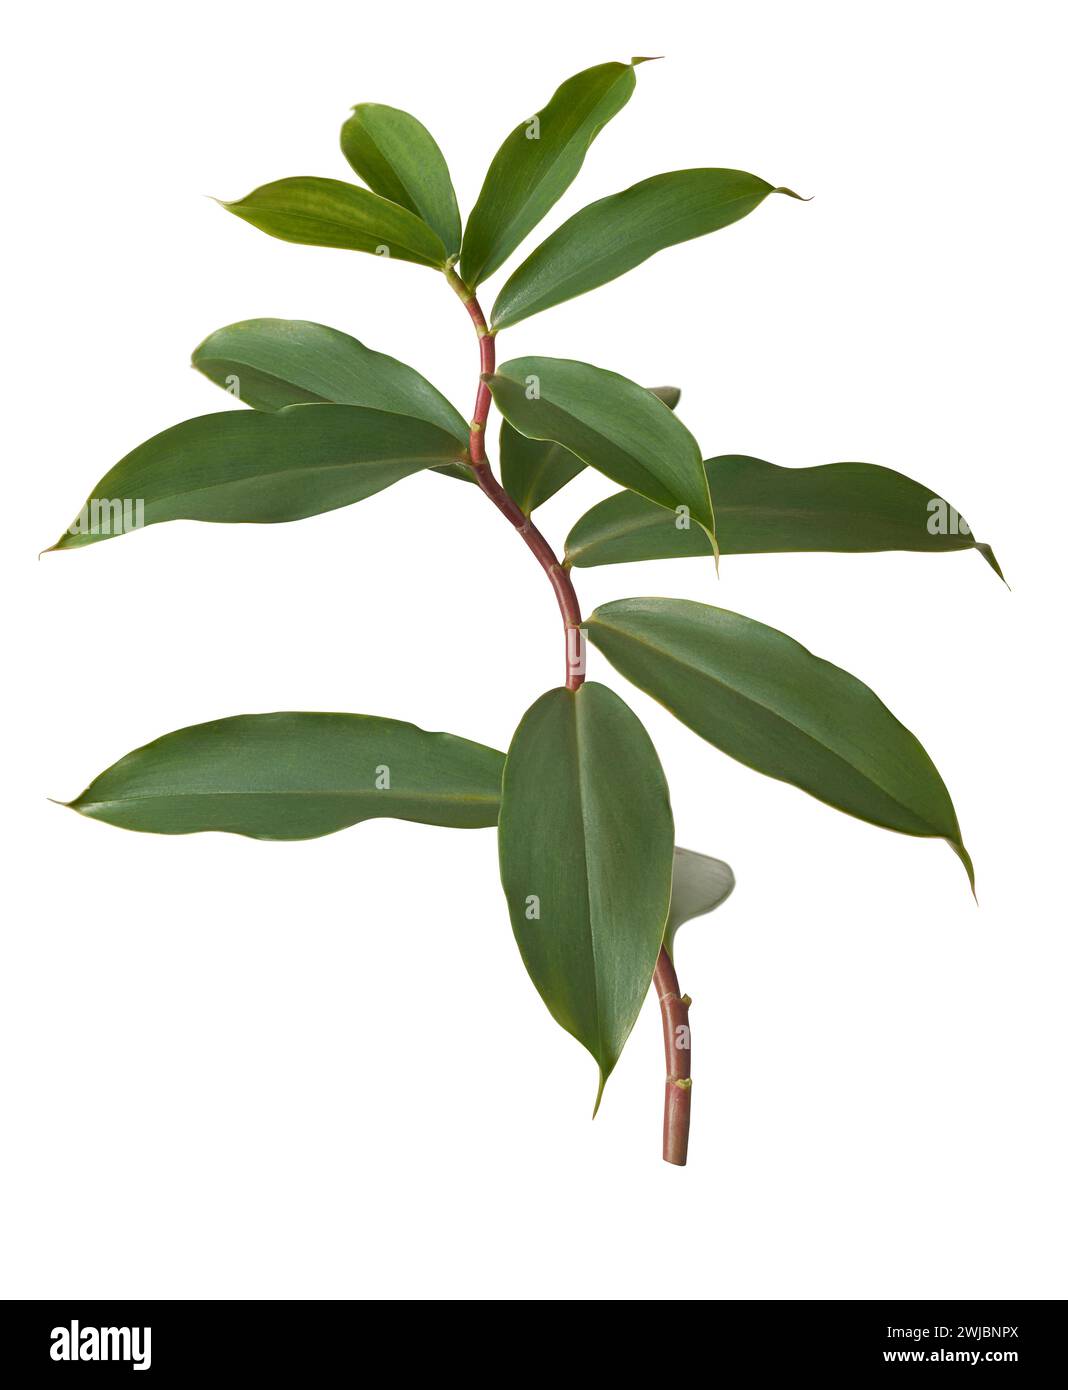 le feuillage végétal de thebu, costus speciosus, couramment trouvé au sri lanka et largement utilisé dans la médecine ayurvédique, les feuilles sont bénéfiques pour contrôler la glycémie Banque D'Images